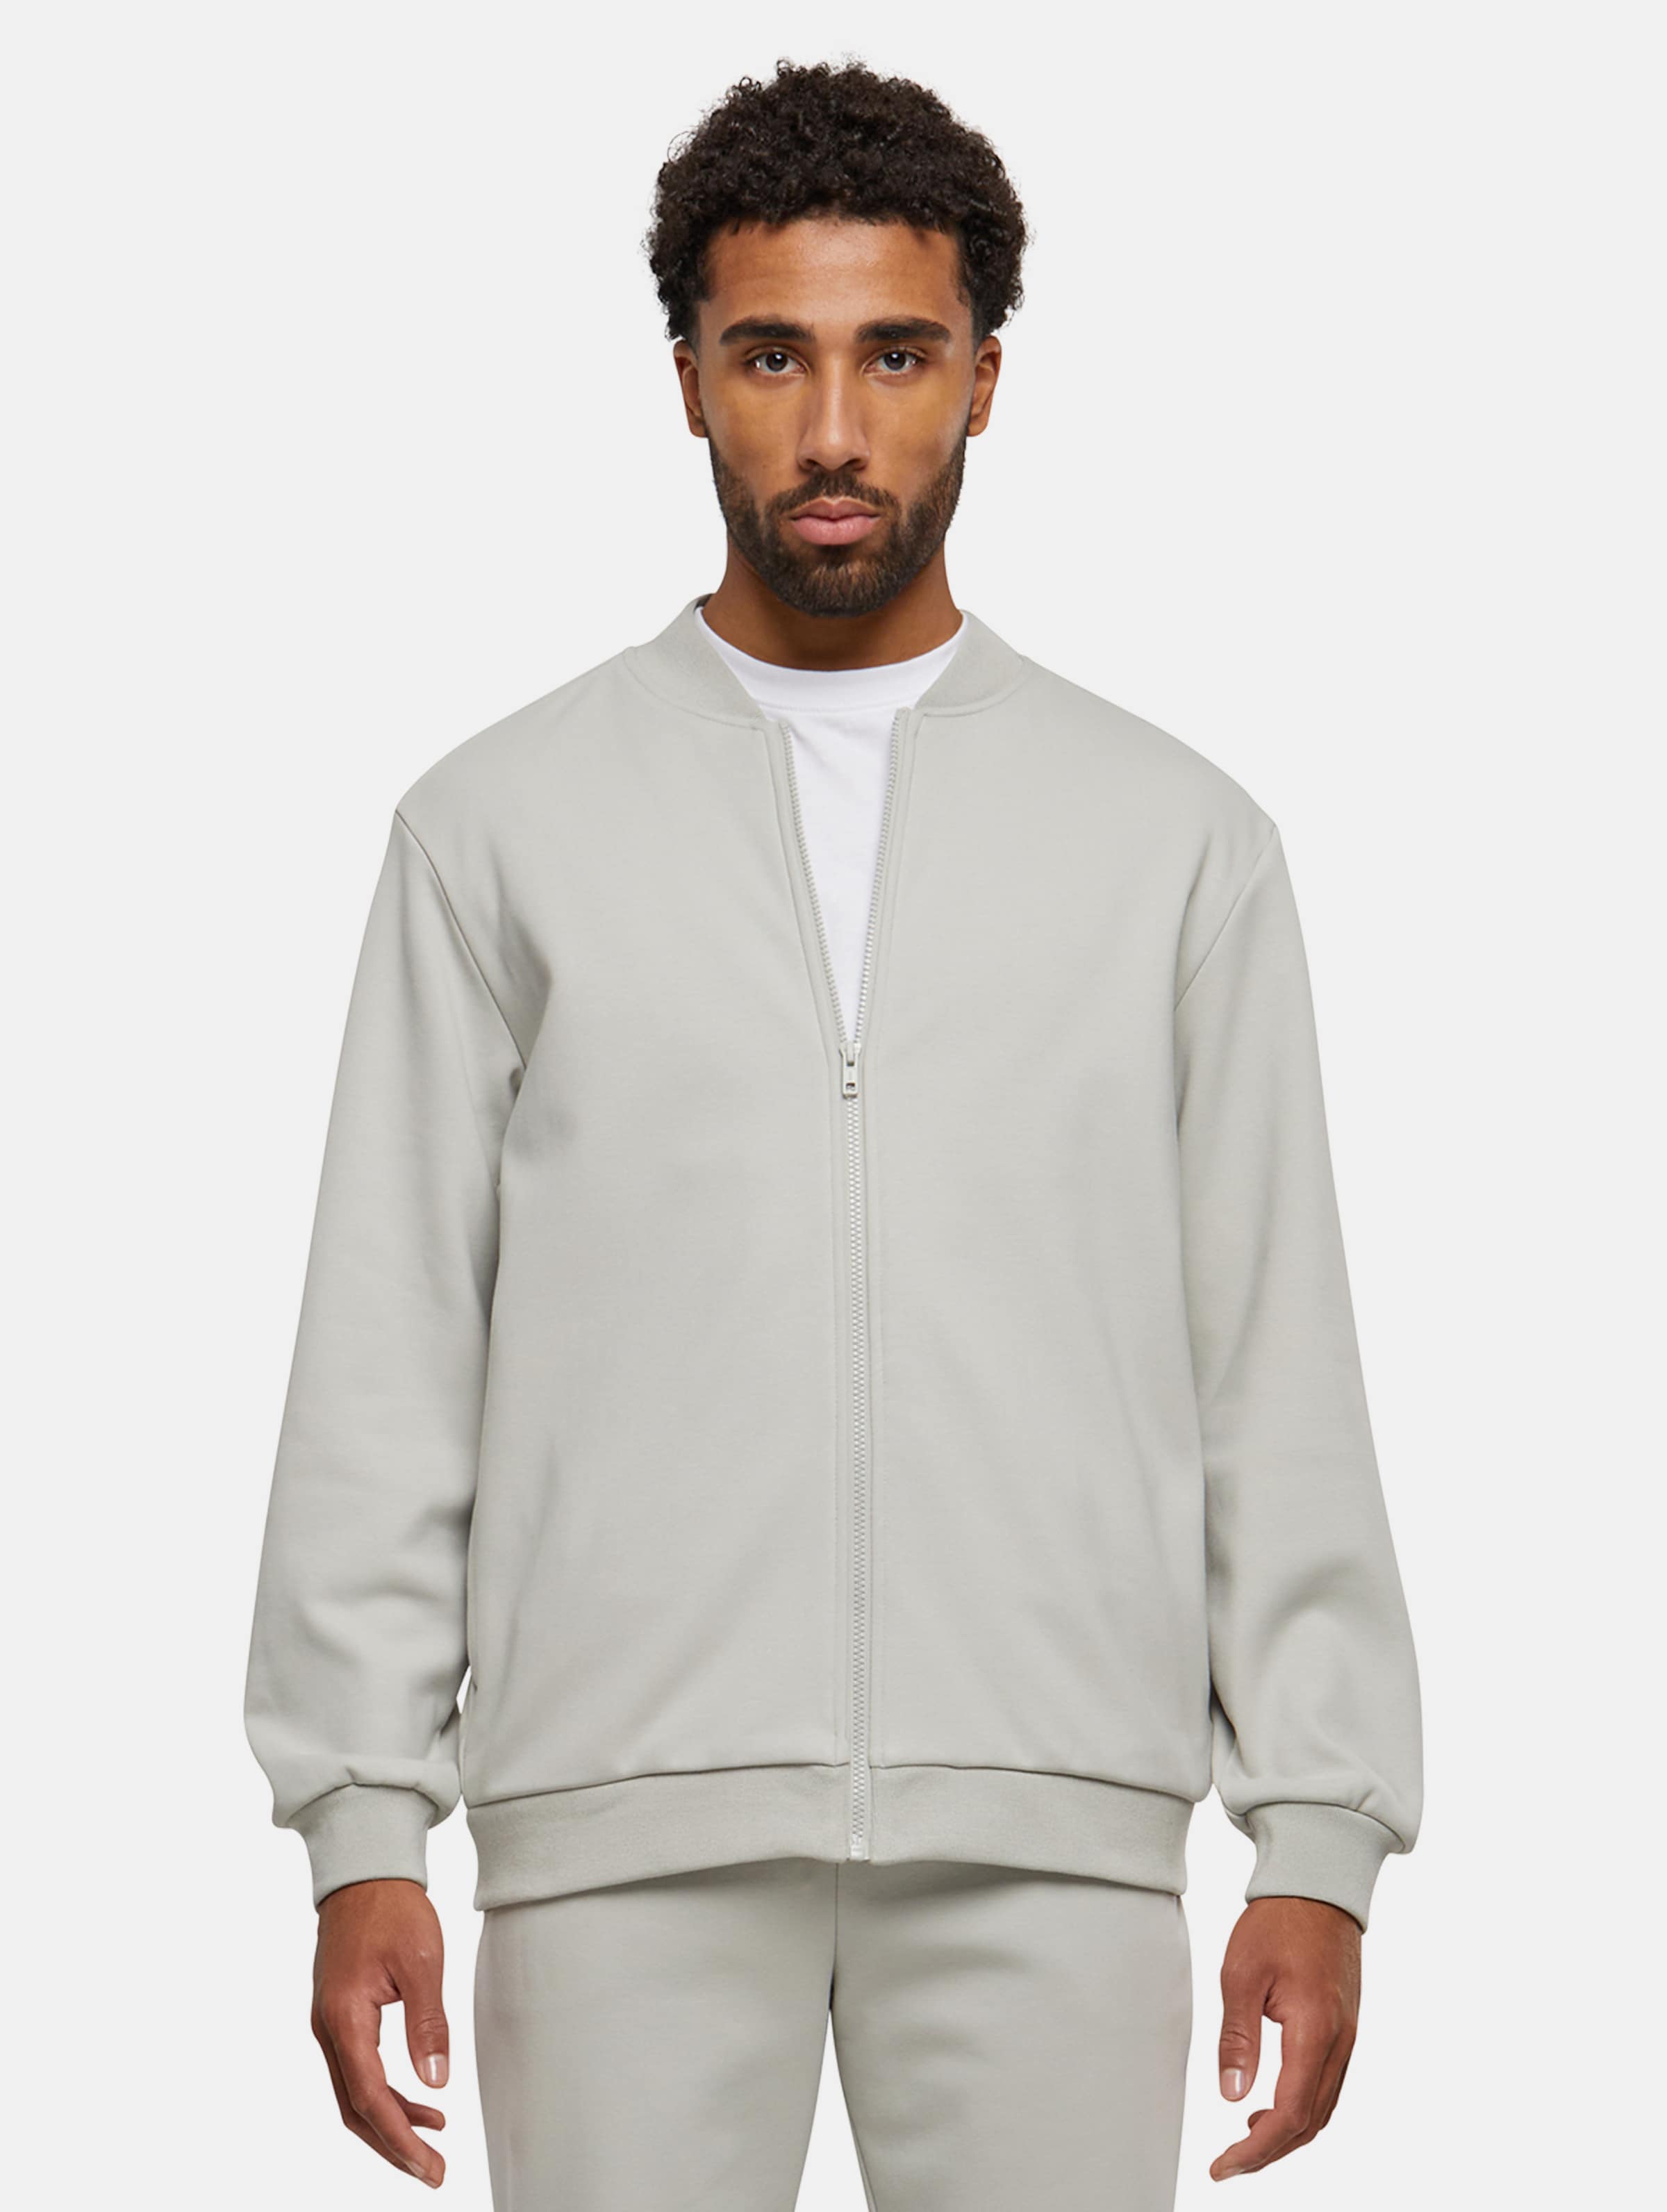 Urban Classics - Cozy College jacket Sweater/trui met rits - S - Grijs